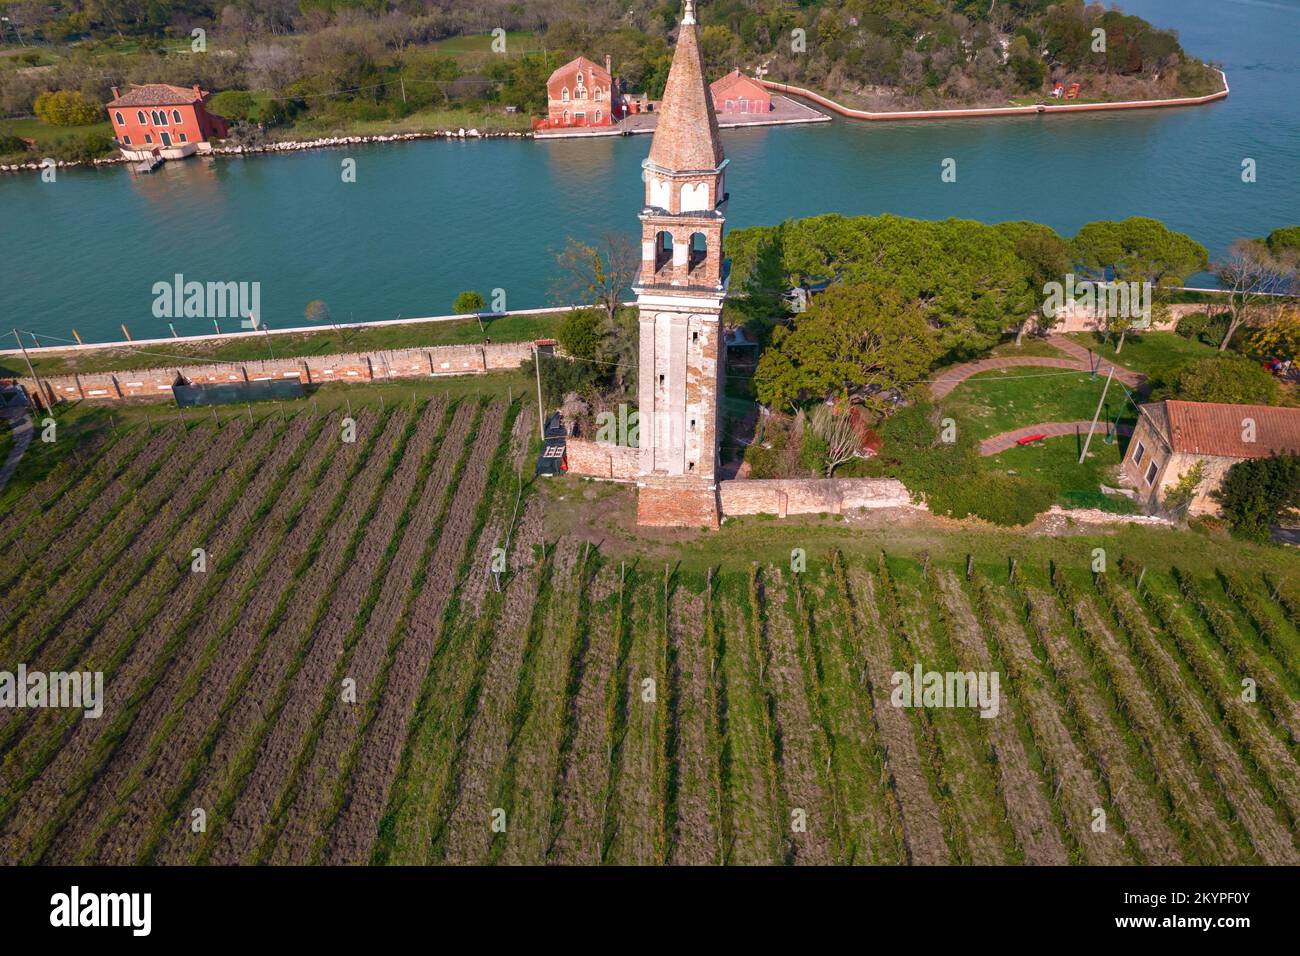 Luftaufnahme auf der Insel Mazzorbo in Venedig, Italien. Forte di Mazzorbo, alter Glockenturm, Weinberg und Mazzorbo Park. Stockfoto